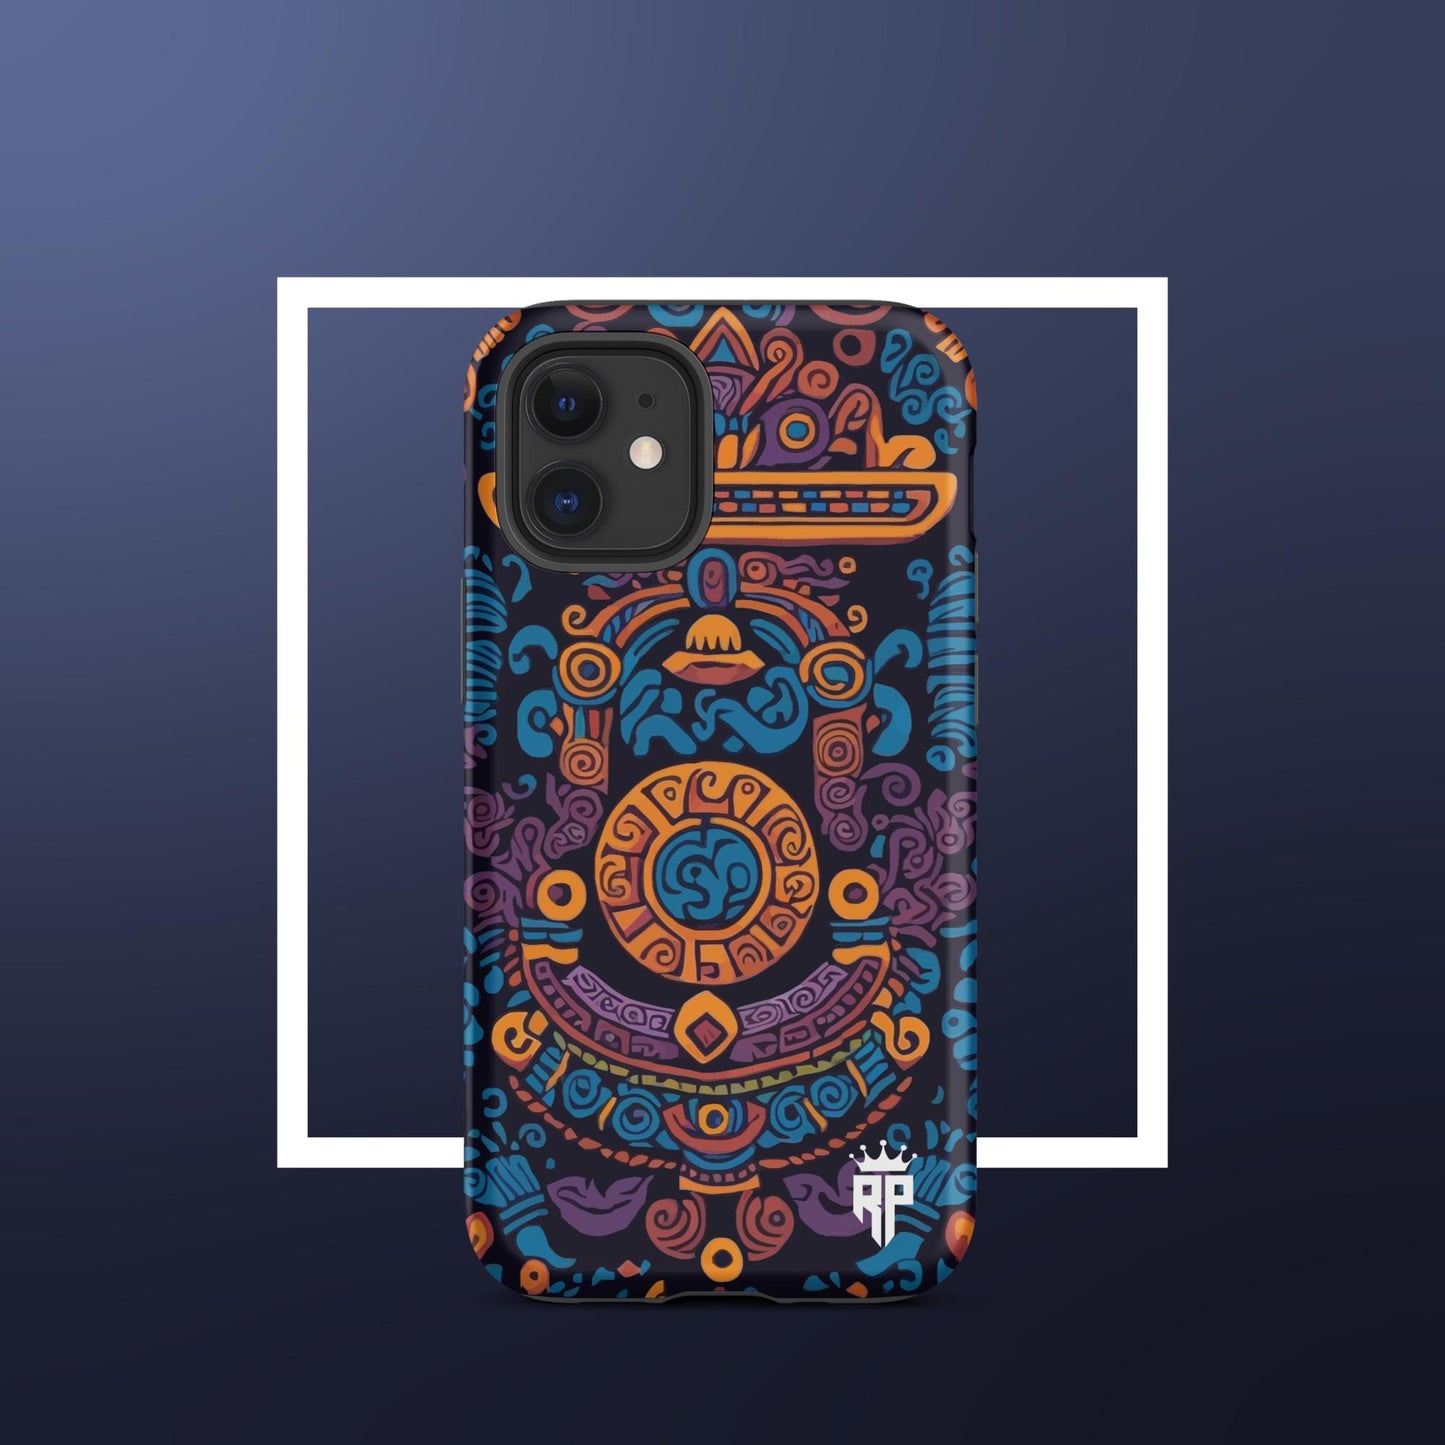 Mayan Zen iPhone® Case